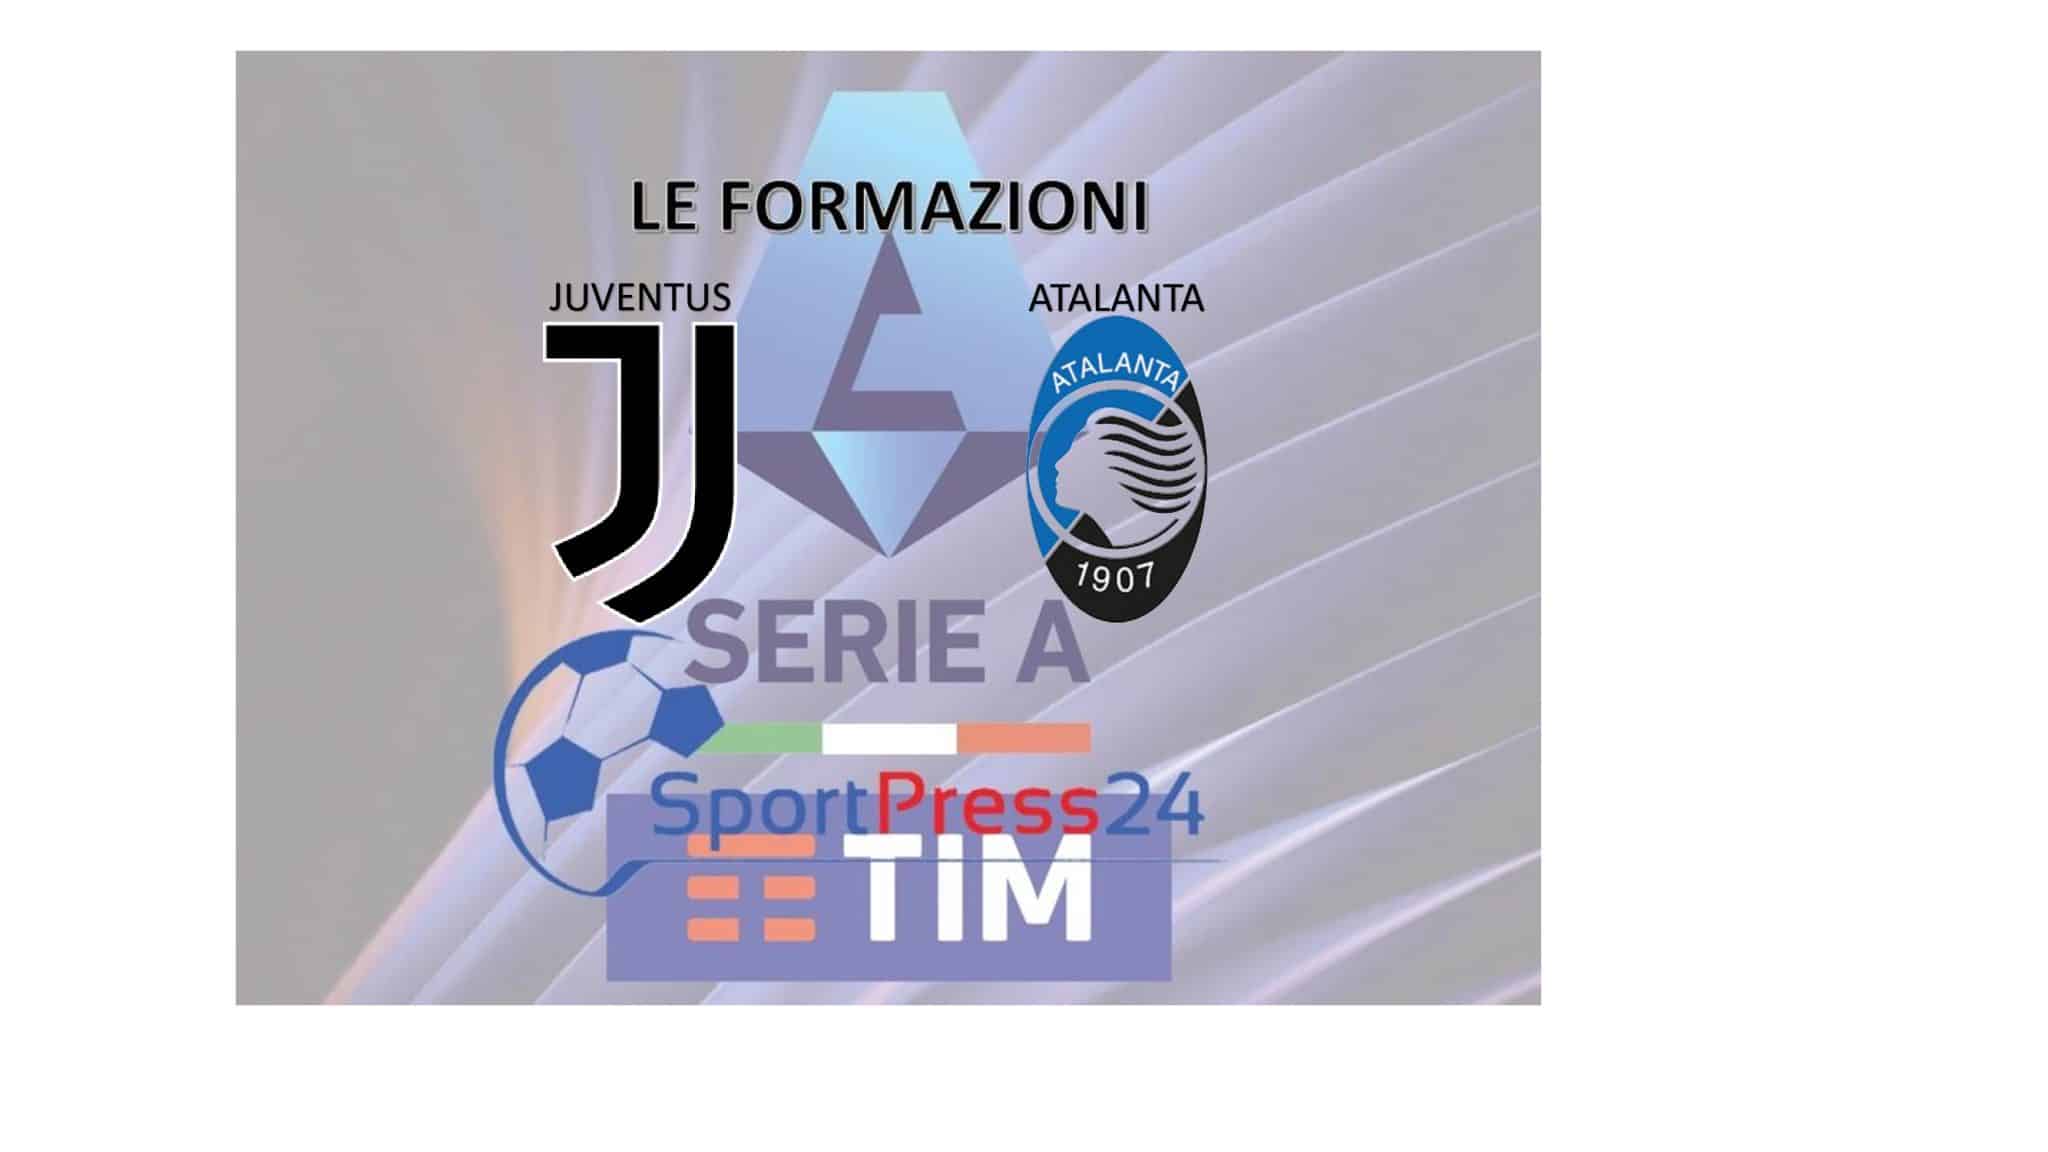 Formazioni-Juventus-Atalanta (immagine a cura di Orazio Bellinghieri)